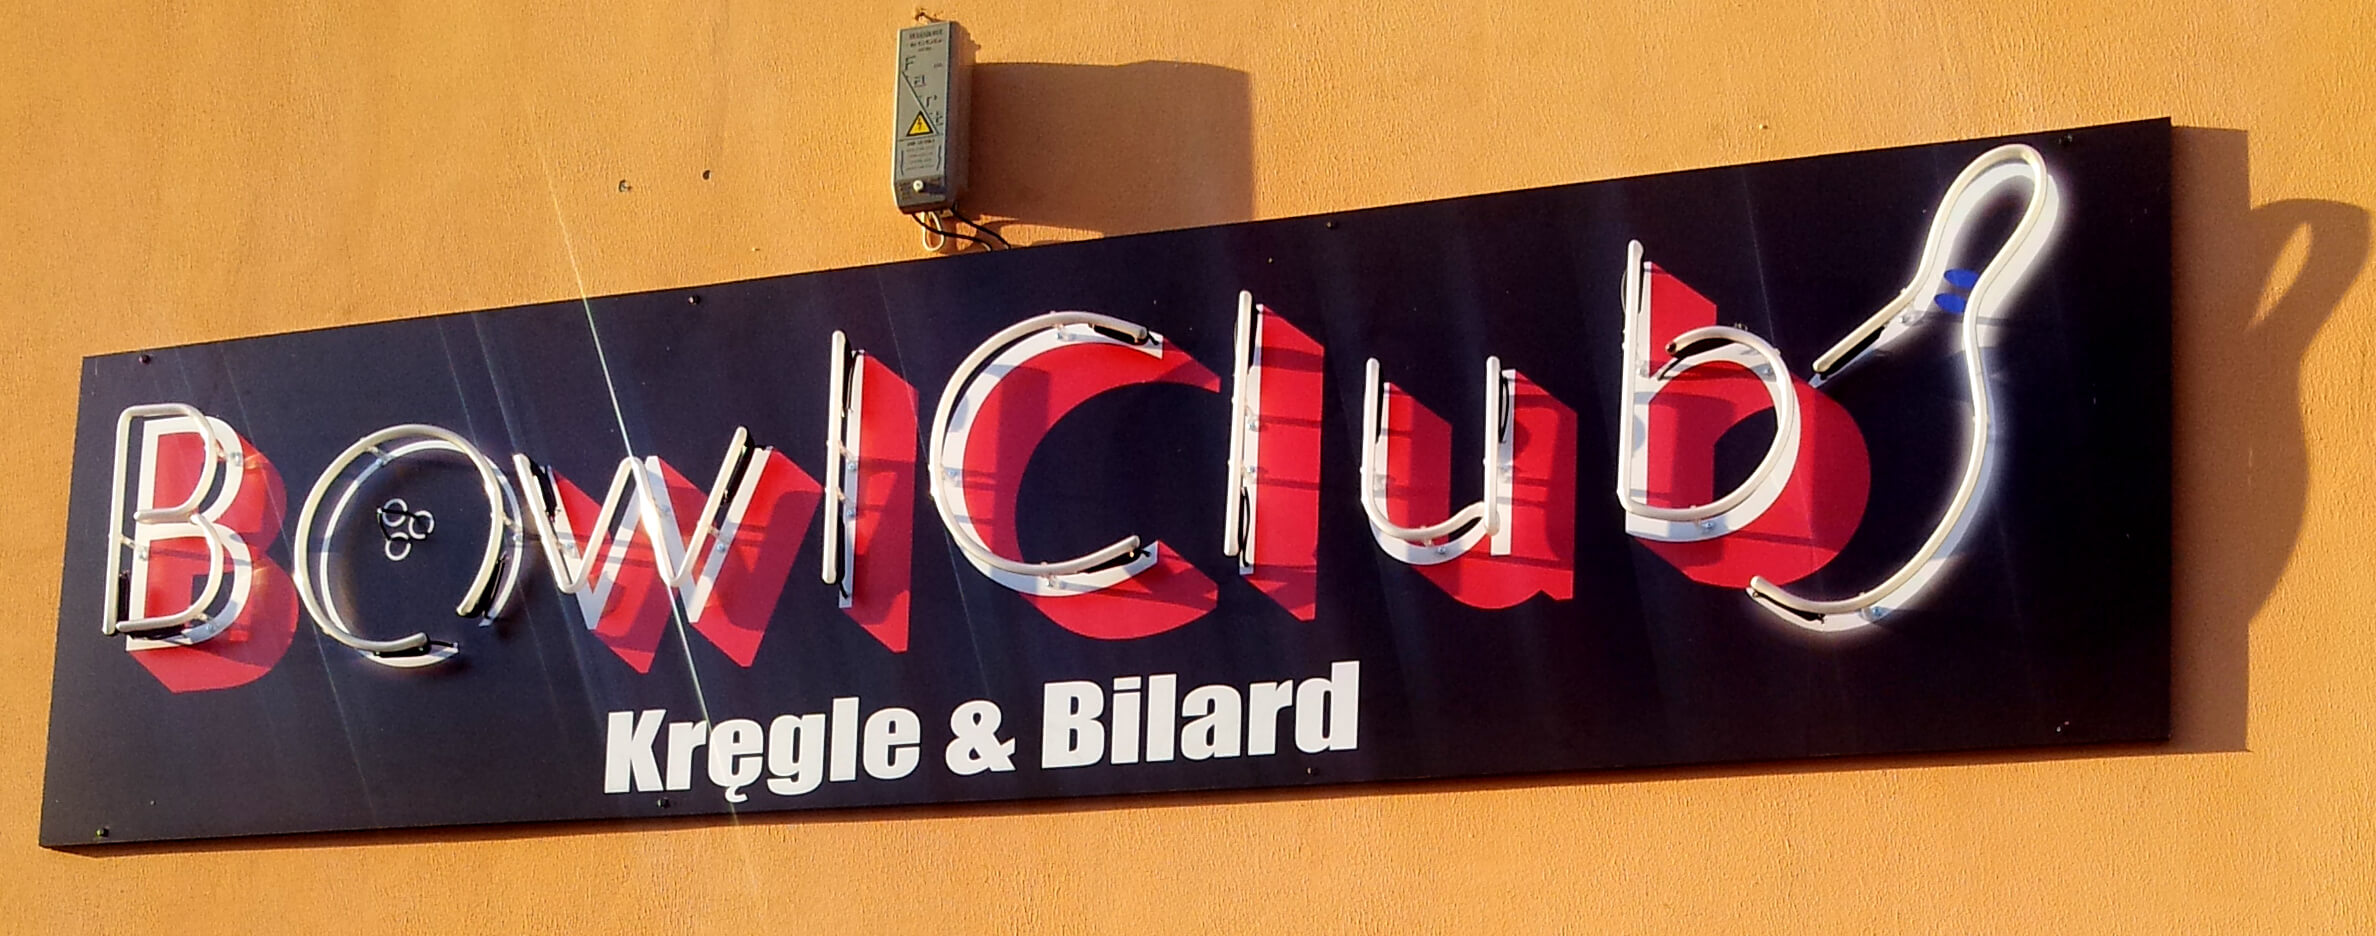 Club de Bolos - Bowl Club - cartel publicitario de neón, colocado en el exterior del edificio